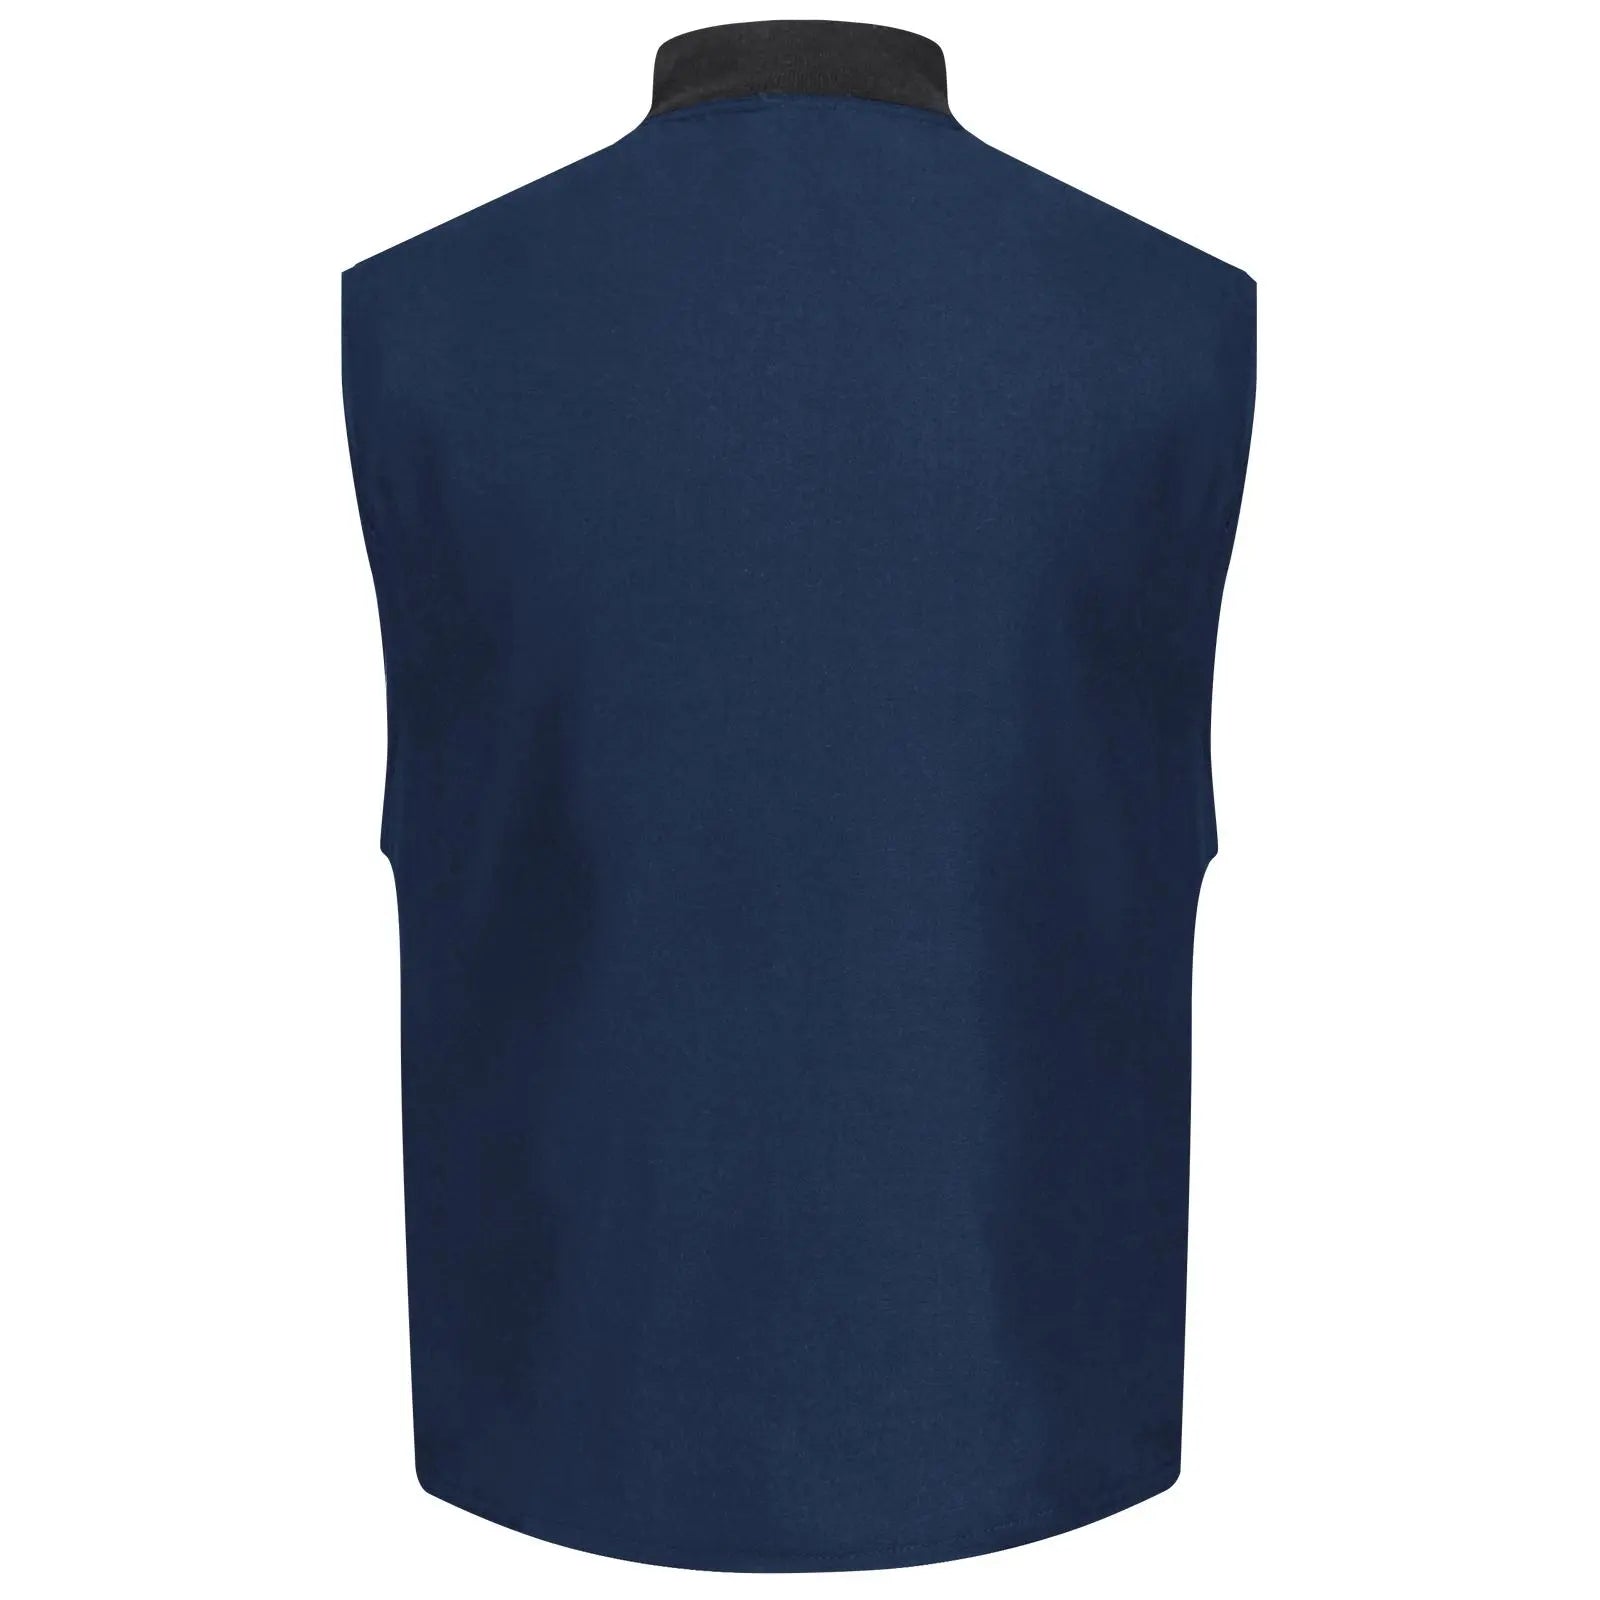 BULWARK - Men's Lightweight Nomex FR Vest Jacket Liner, Navy - Becker Safety and Supply